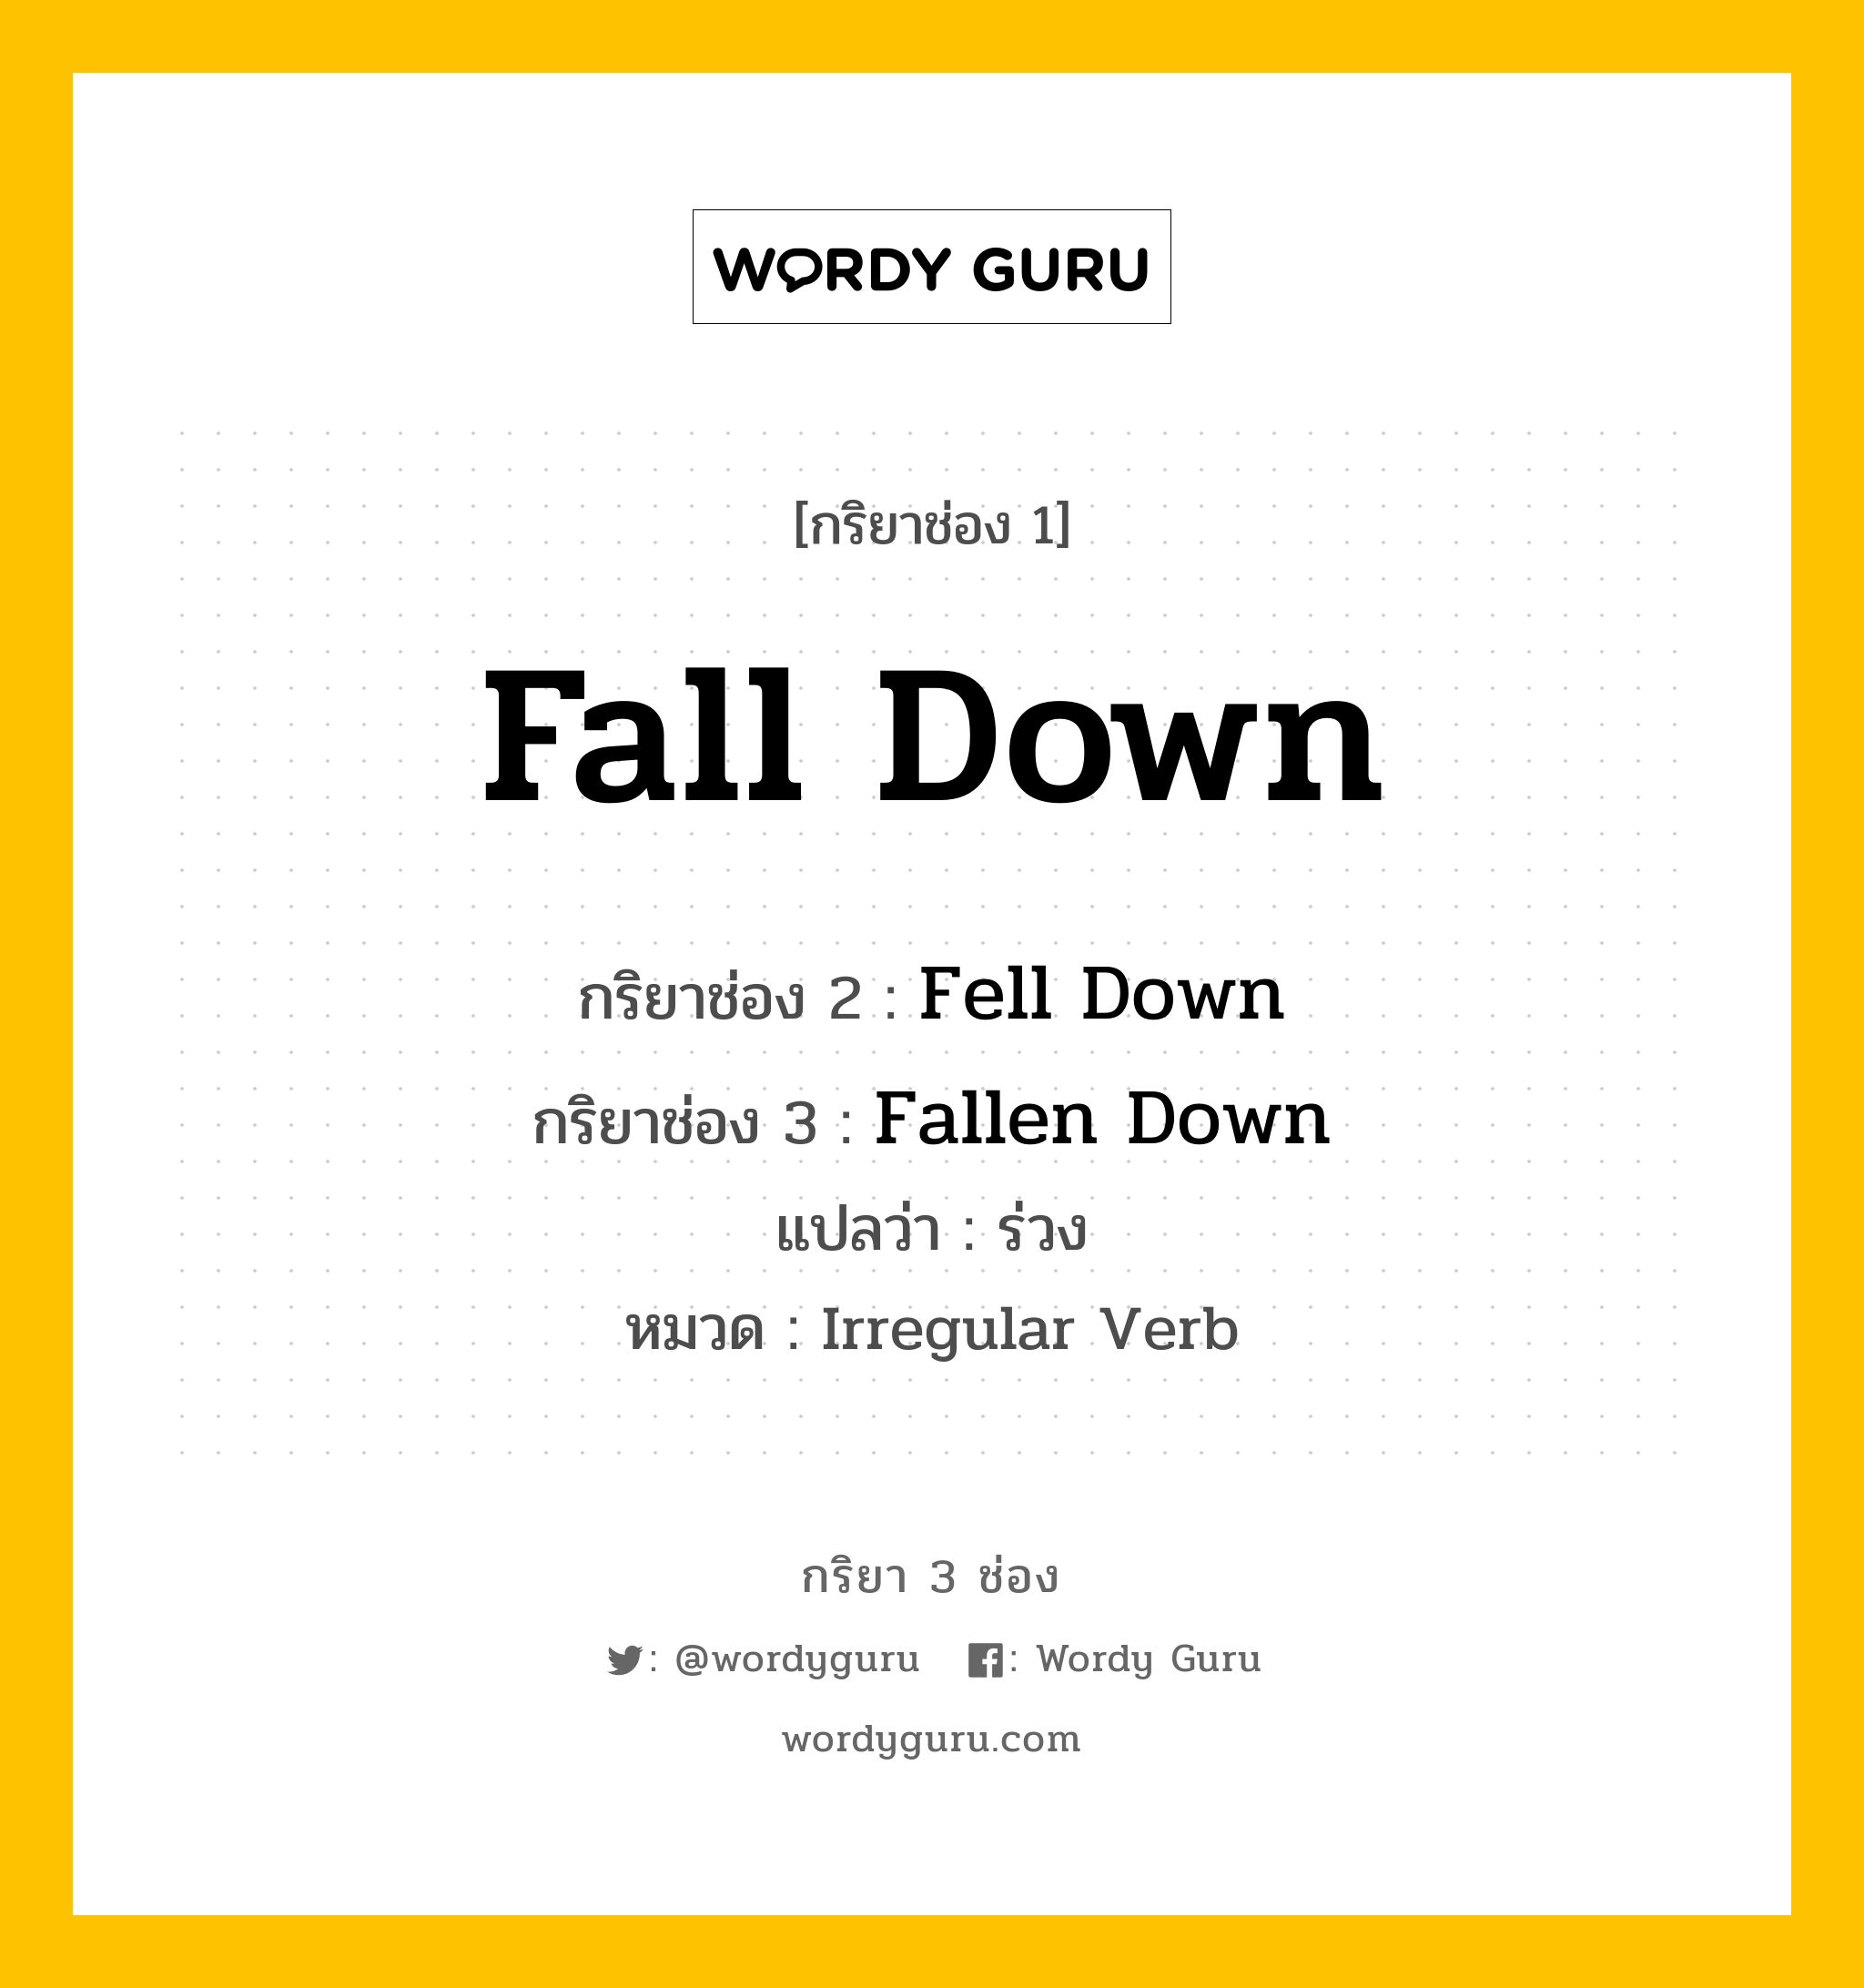 กริยา 3 ช่อง: Fall Down ช่อง 2 Fall Down ช่อง 3 คืออะไร, กริยาช่อง 1 Fall Down กริยาช่อง 2 Fell Down กริยาช่อง 3 Fallen Down แปลว่า ร่วง หมวด Irregular Verb หมวด Irregular Verb